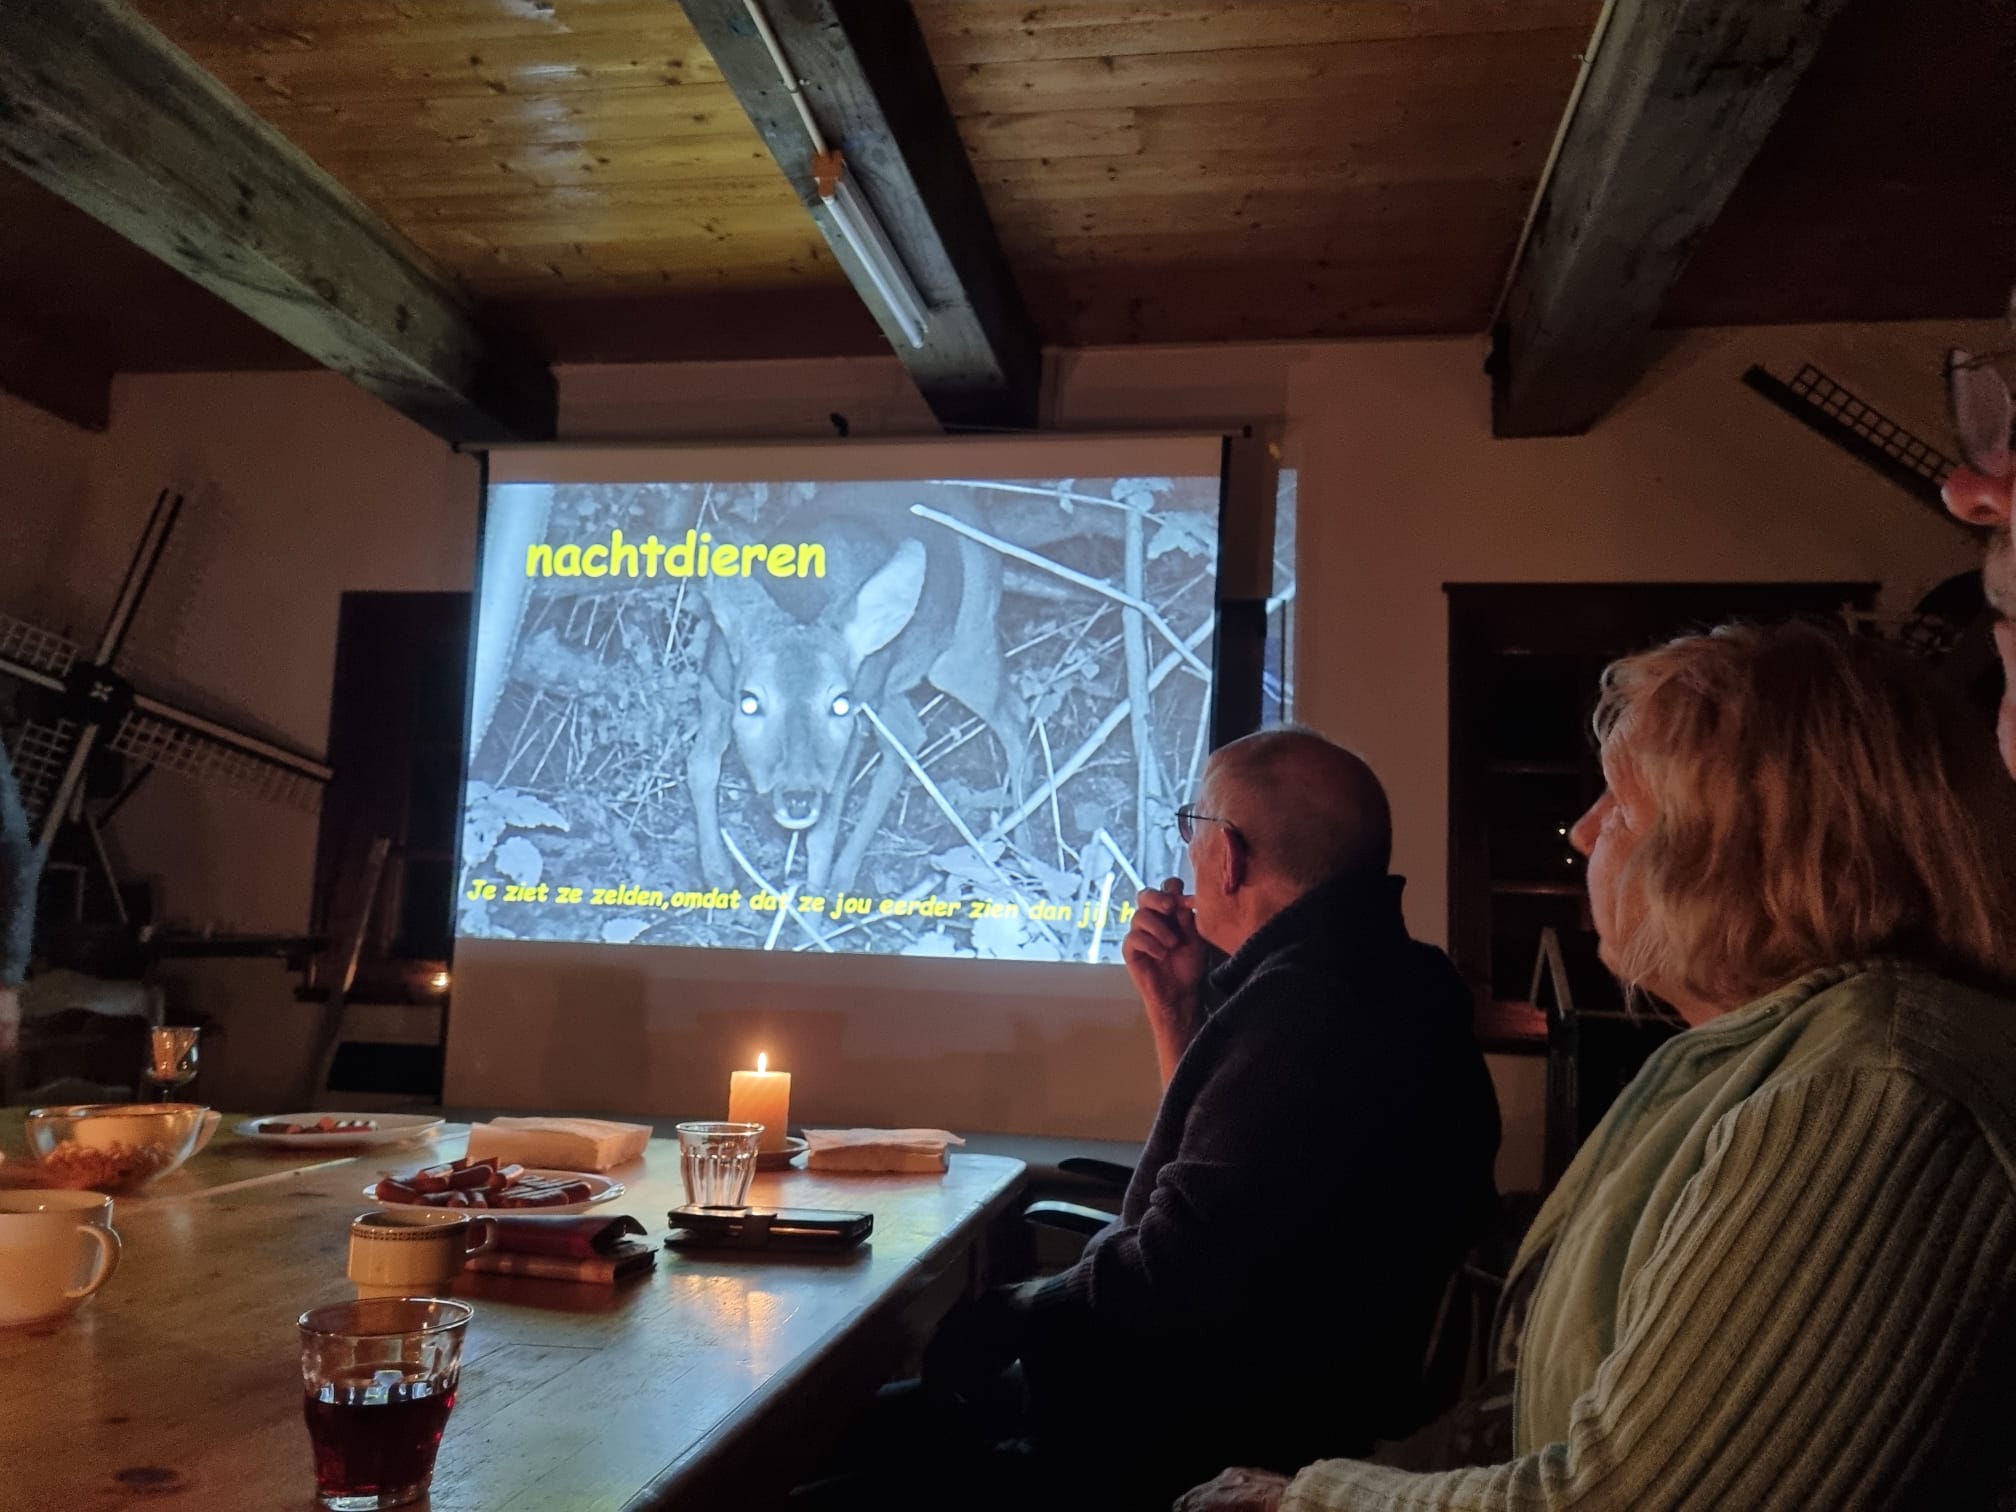 IVN presentatie in de molen van Roderwolde tijdens de Nacht van de Nacht 2021